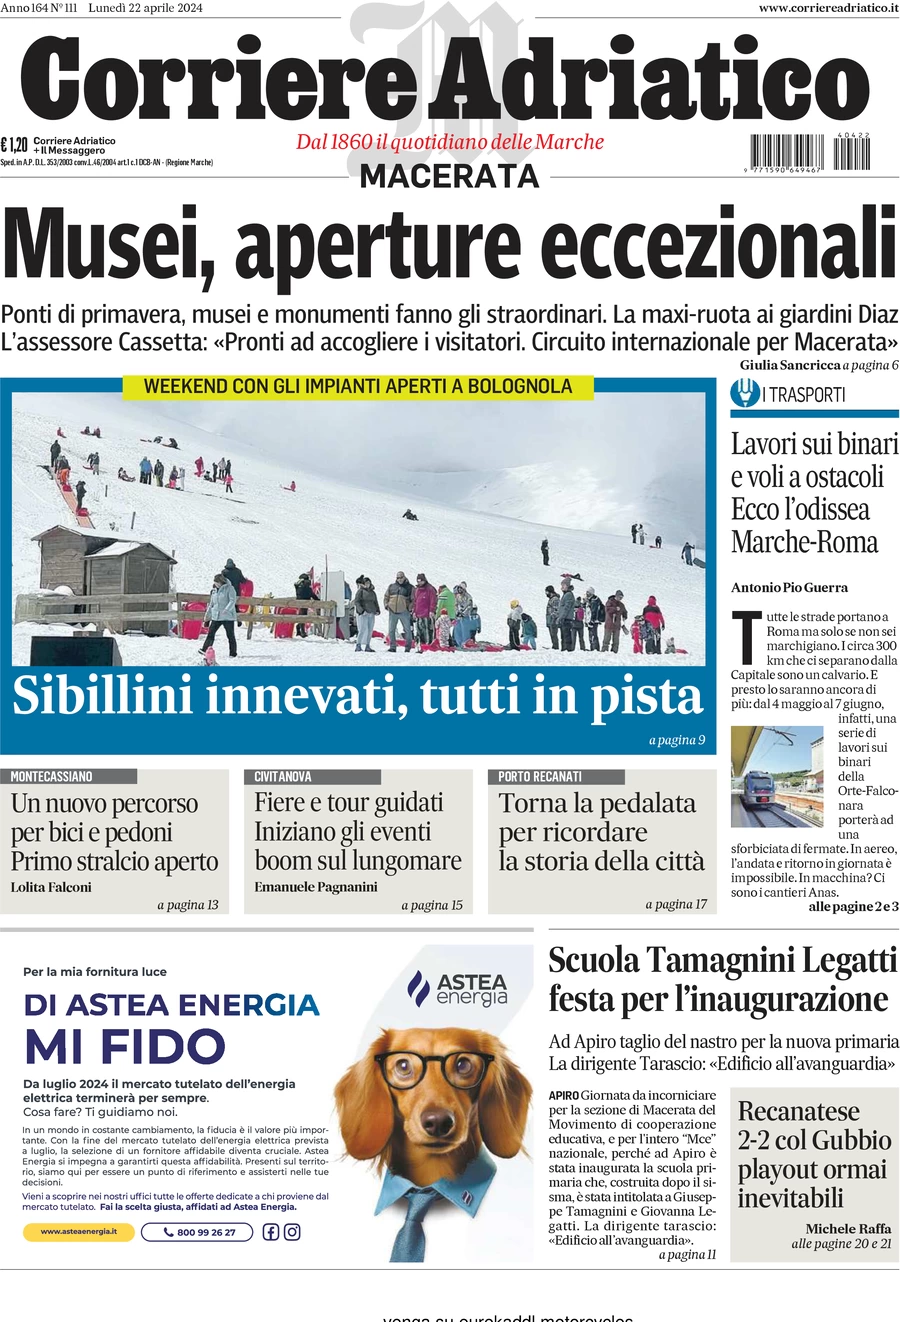 anteprima della prima pagina di corriere-adriatico-macerata del 22/04/2024